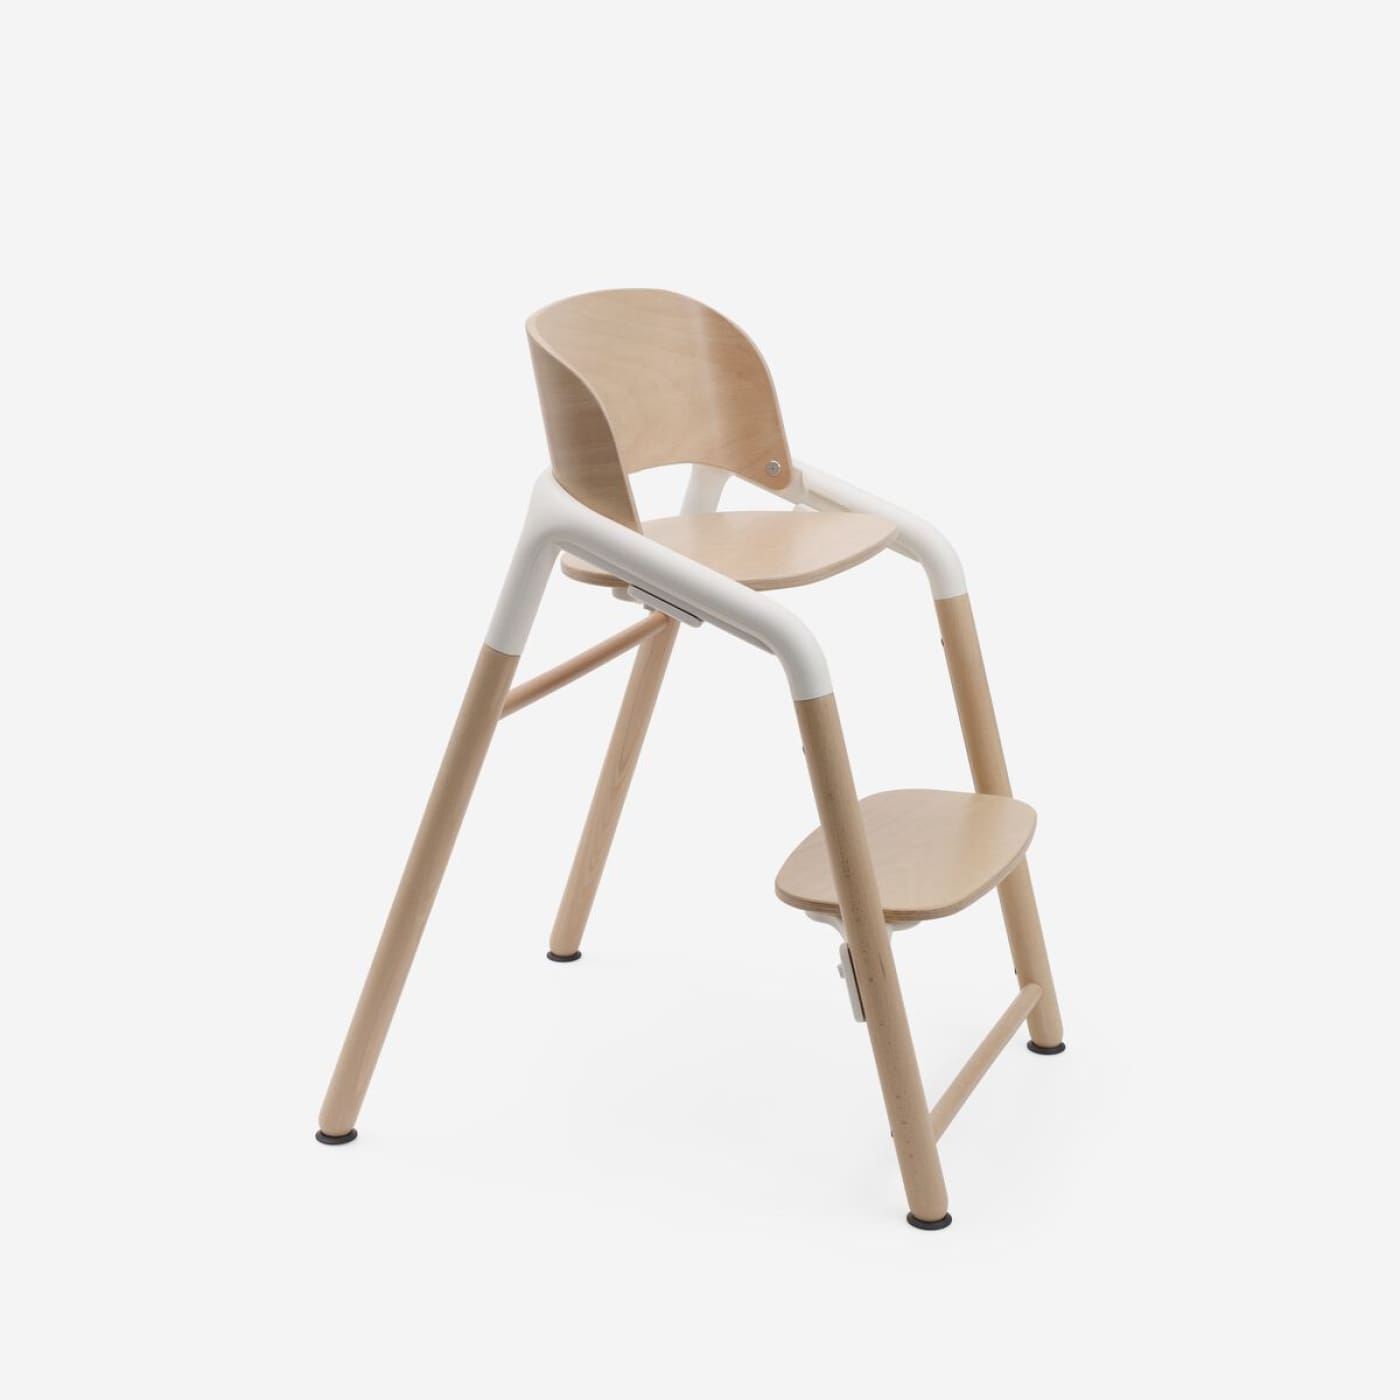 Bugaboo Giraffe High Chair - Neutral Wood/White - Neutral Wood/White - NURSING & FEEDING - HIGH CHAIRS/BOOSTER SEATS